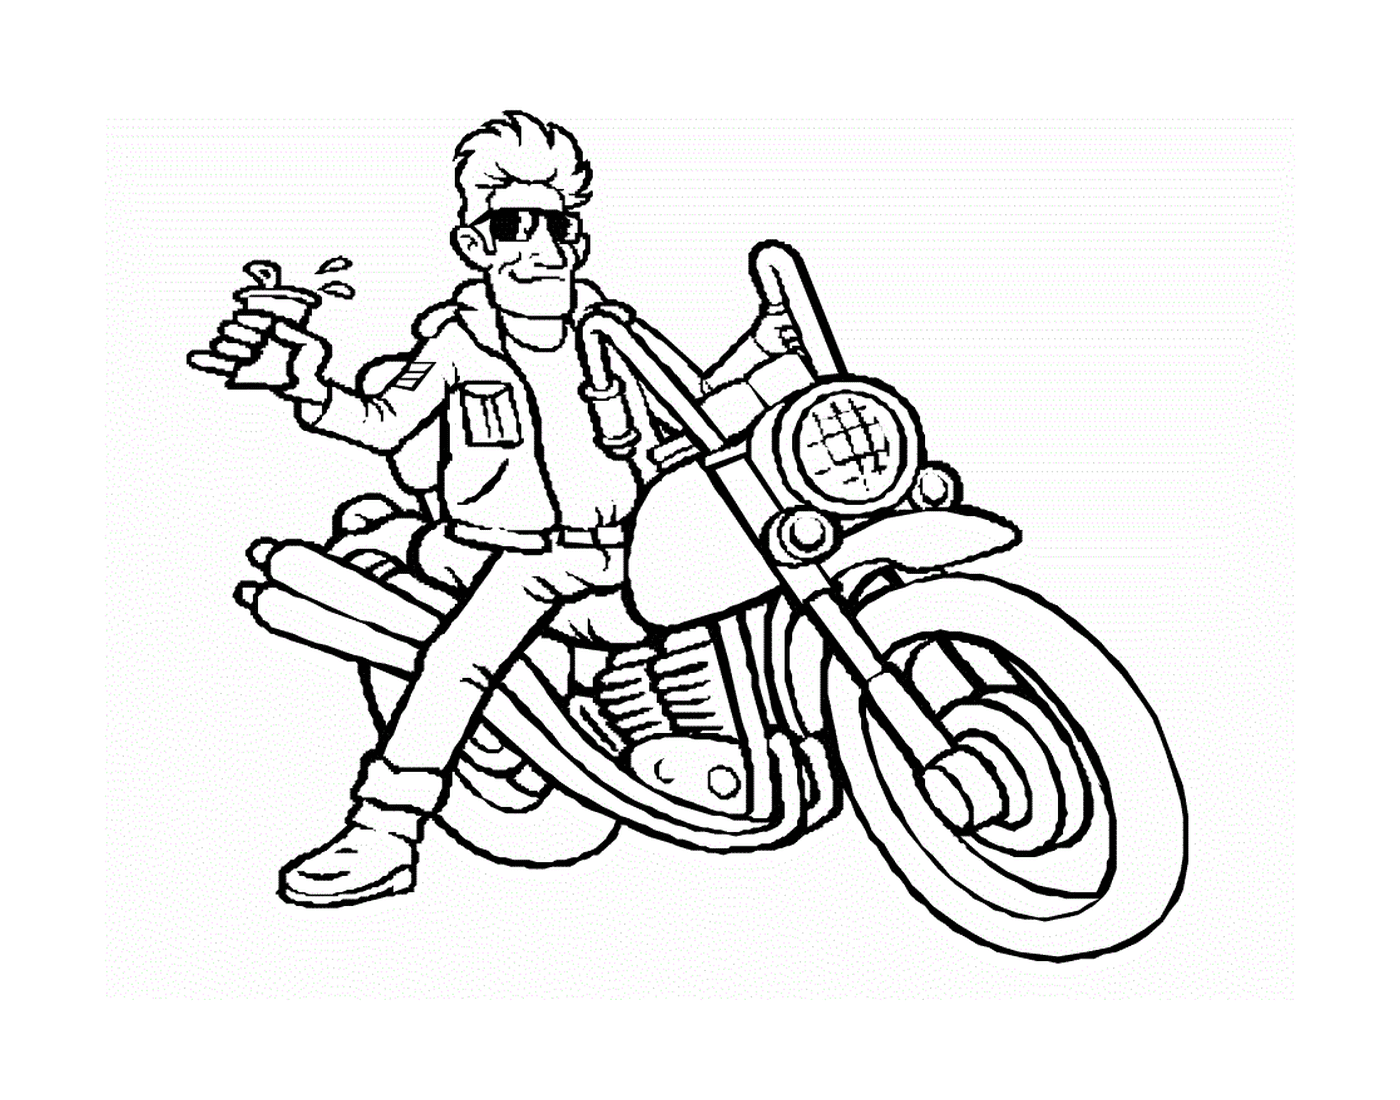  мужчина сидит на мотоцикле 